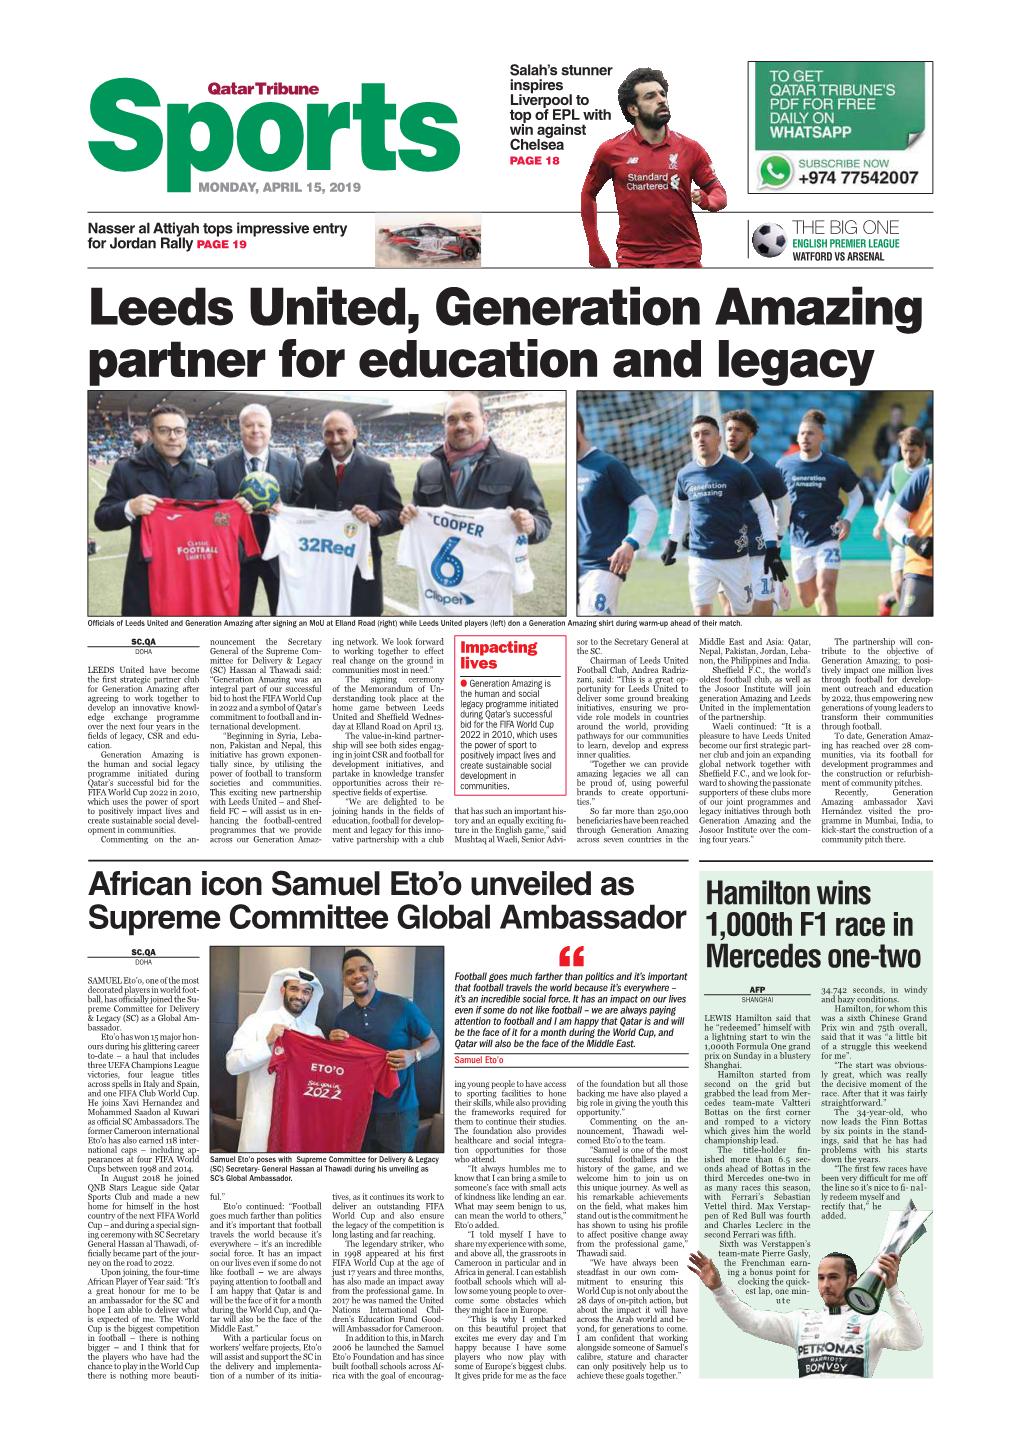 Leeds United, Generation Amazing Partner for Education and Legacy